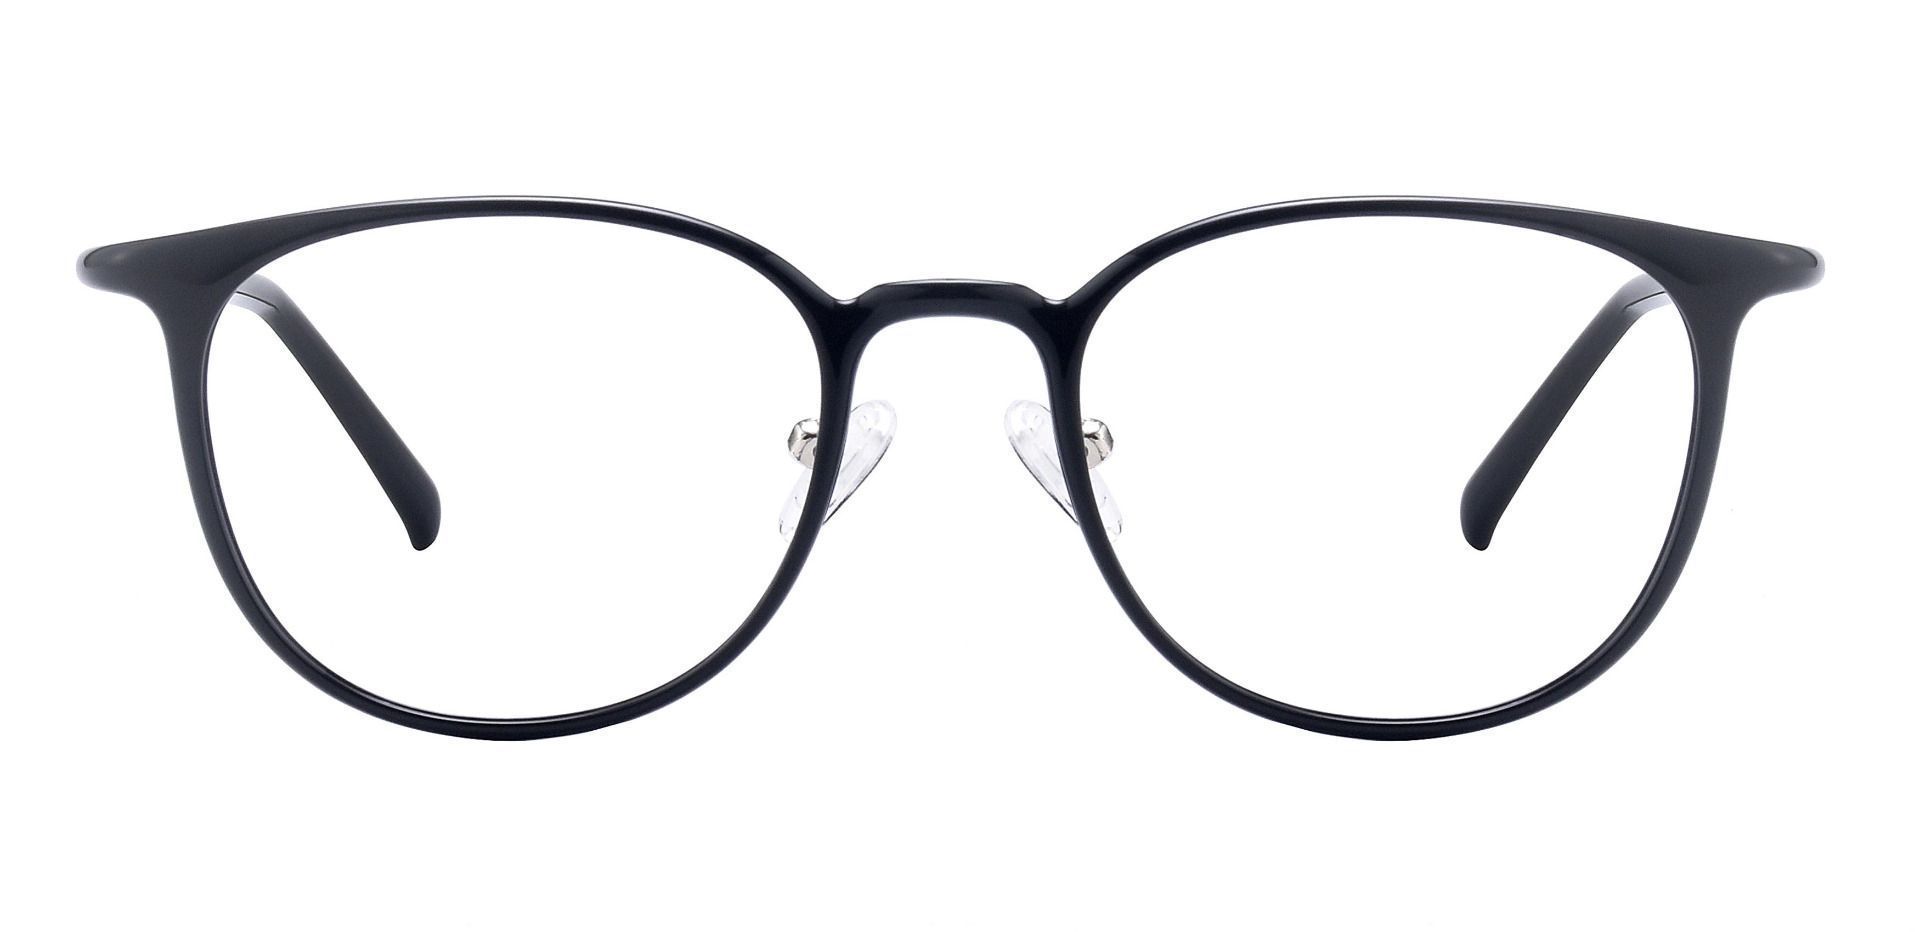 Stanton Oval Eyeglasses Frame Black Men S Eyeglasses Payne Glasses